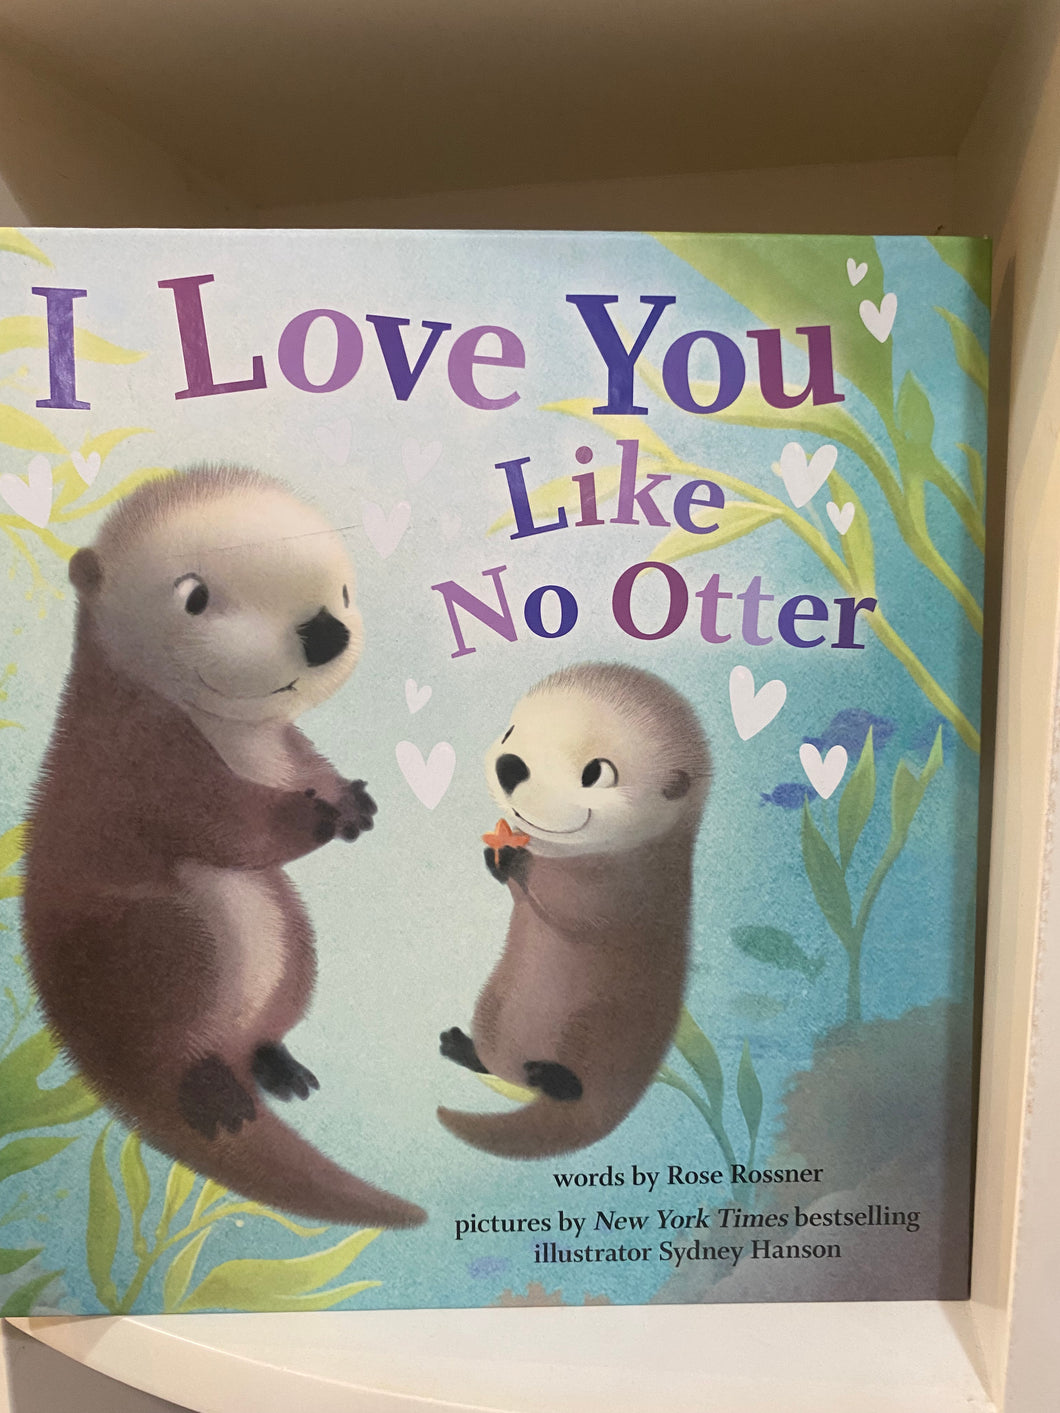 I love you like No Otter